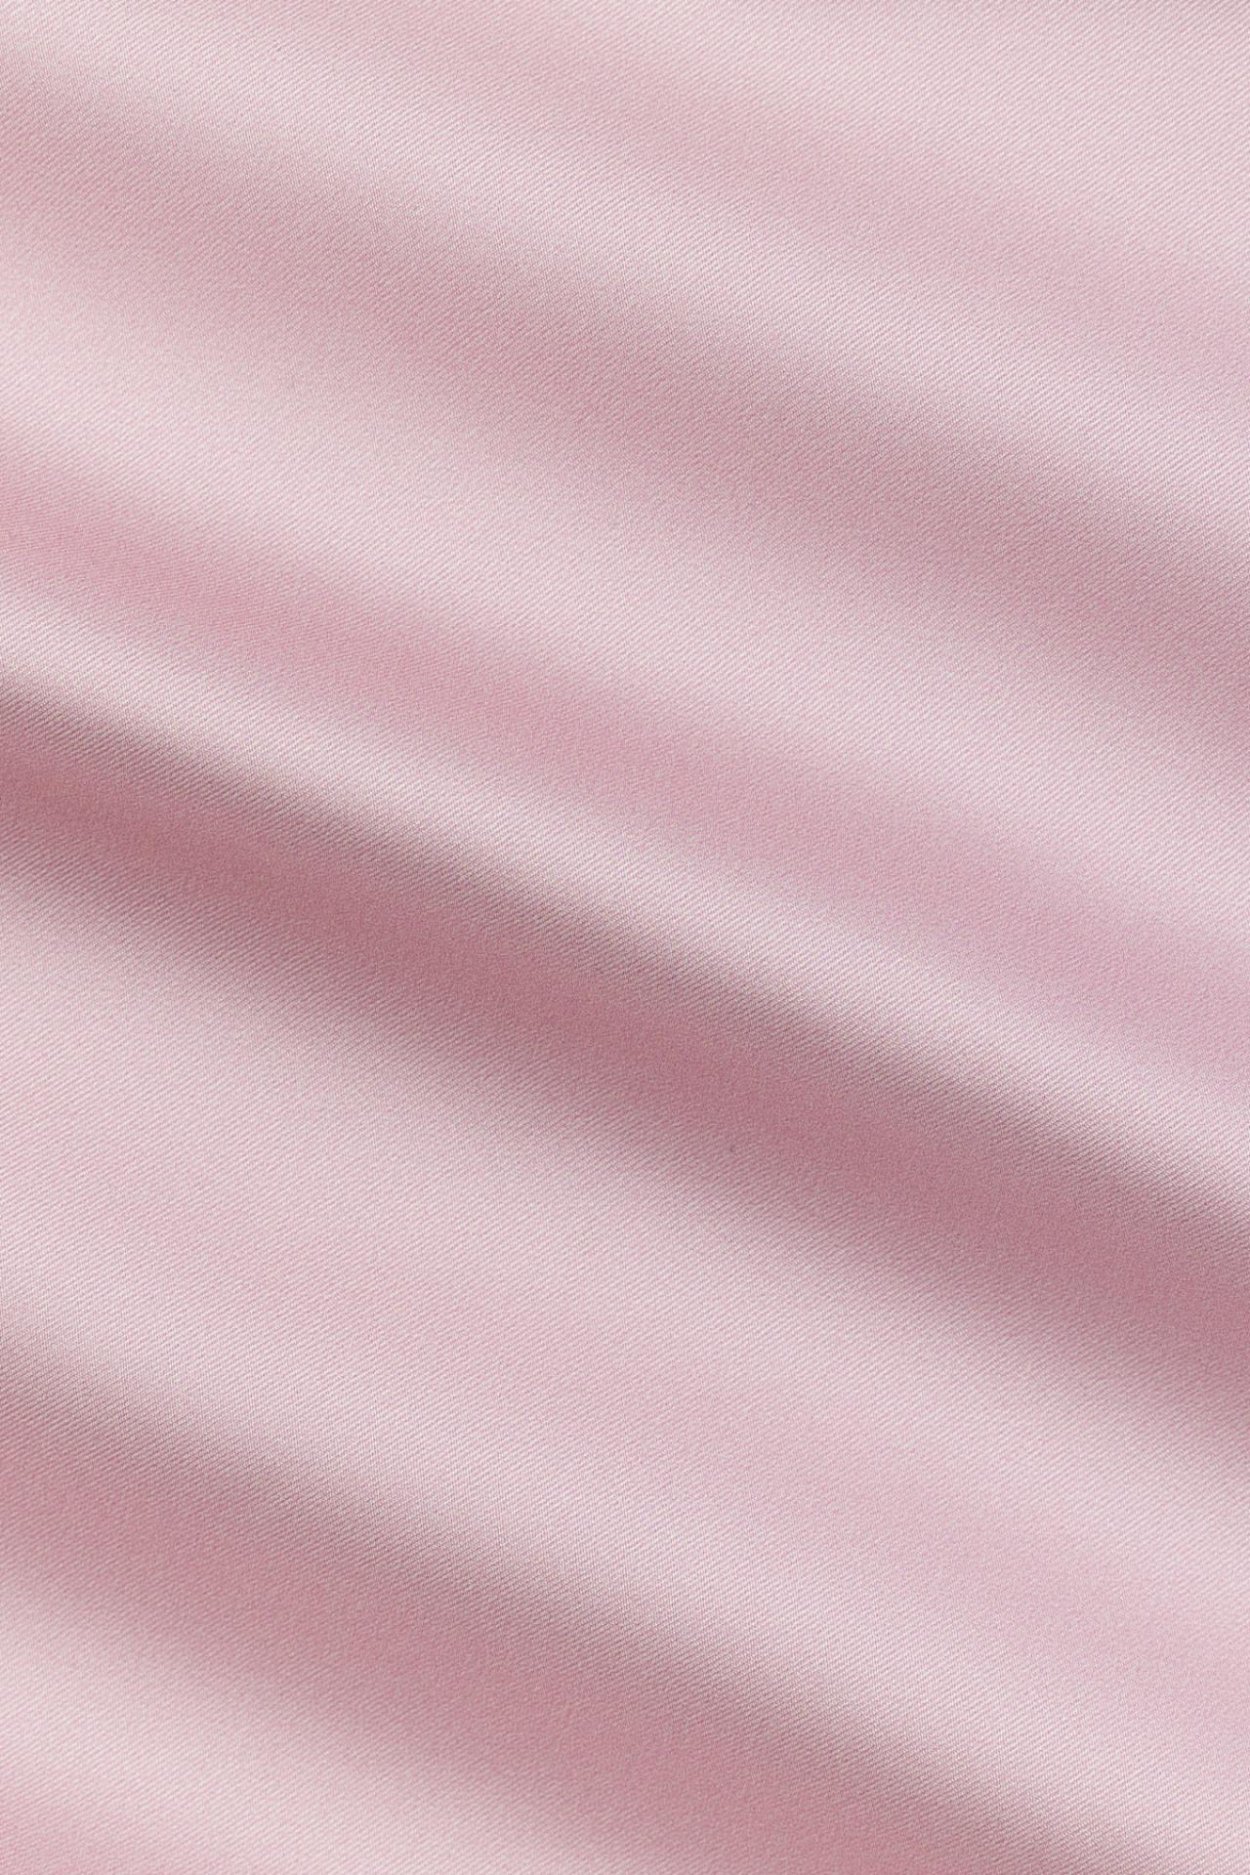 Růžový hedvábný kapesníček